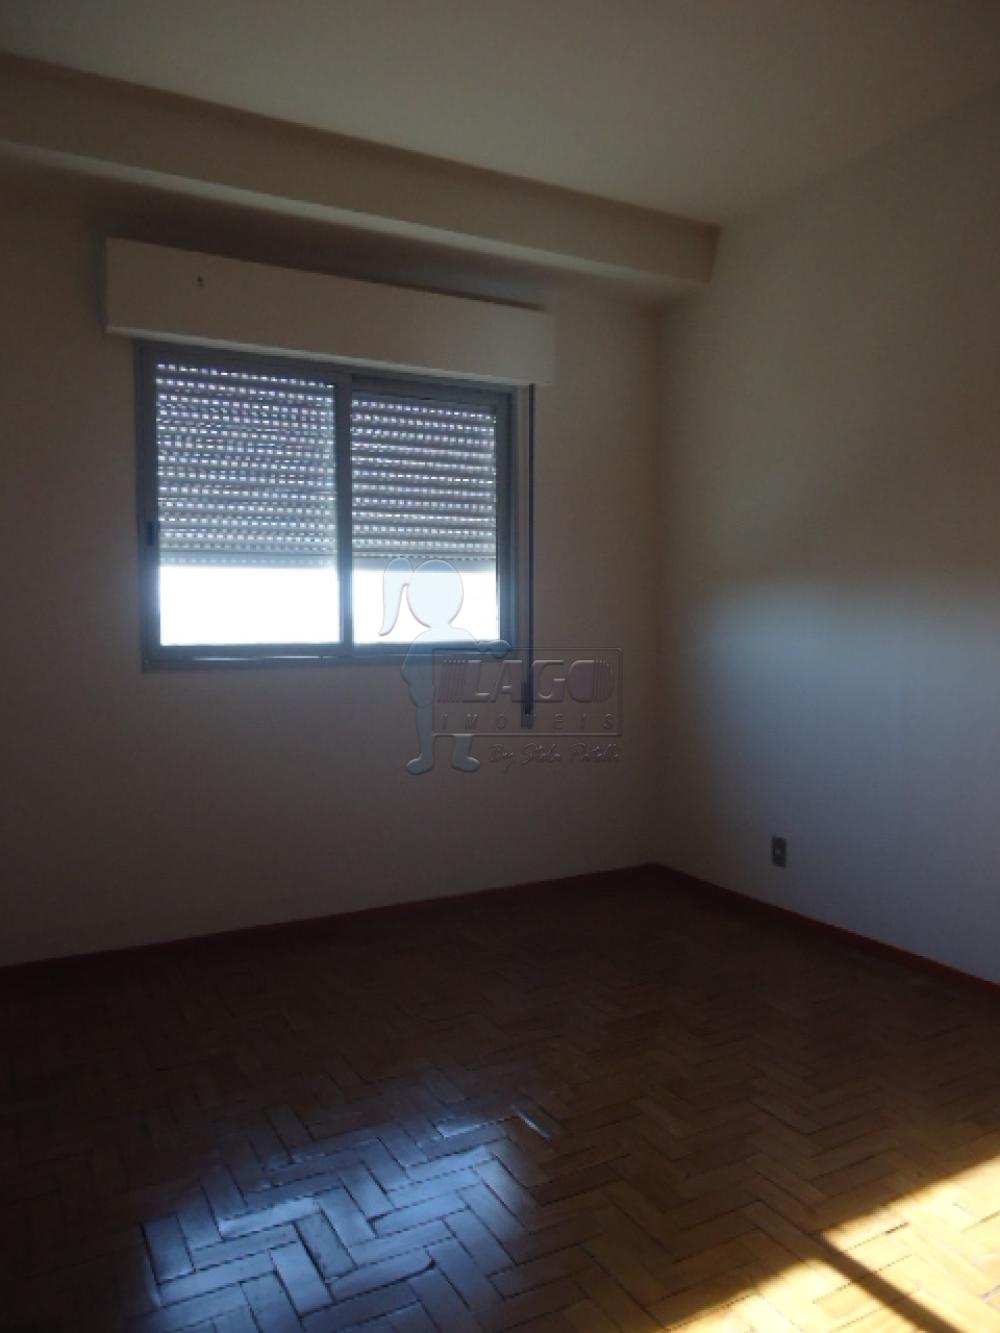 Alugar Apartamento / Padrão em Ribeirão Preto R$ 2.500,00 - Foto 10